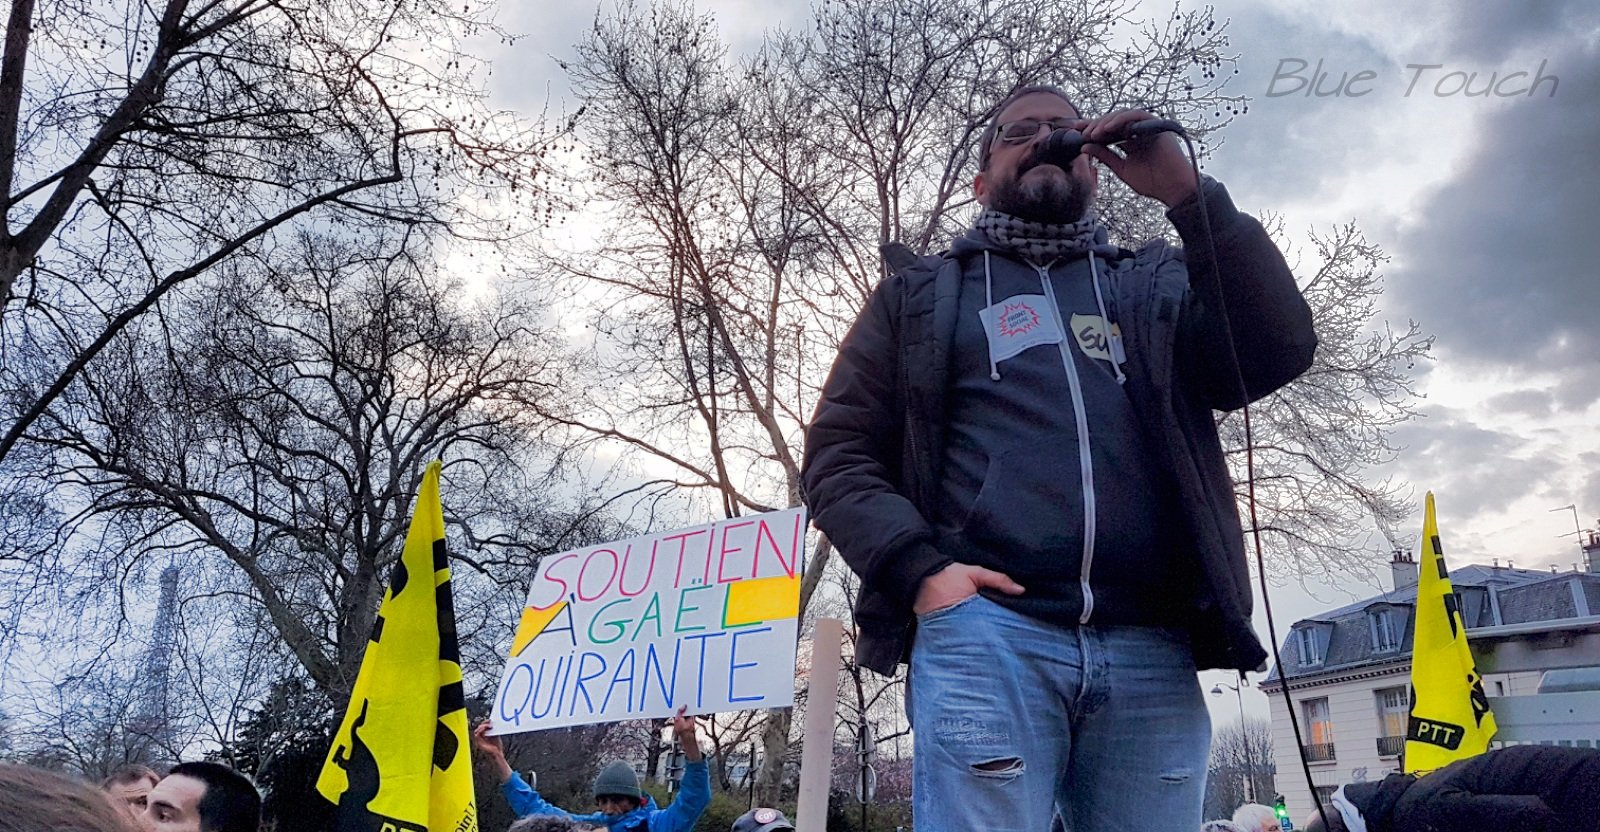 Vidéo. 500 manifestants contre le licenciement de Gaël Quirante, approuvé par Pénicaud